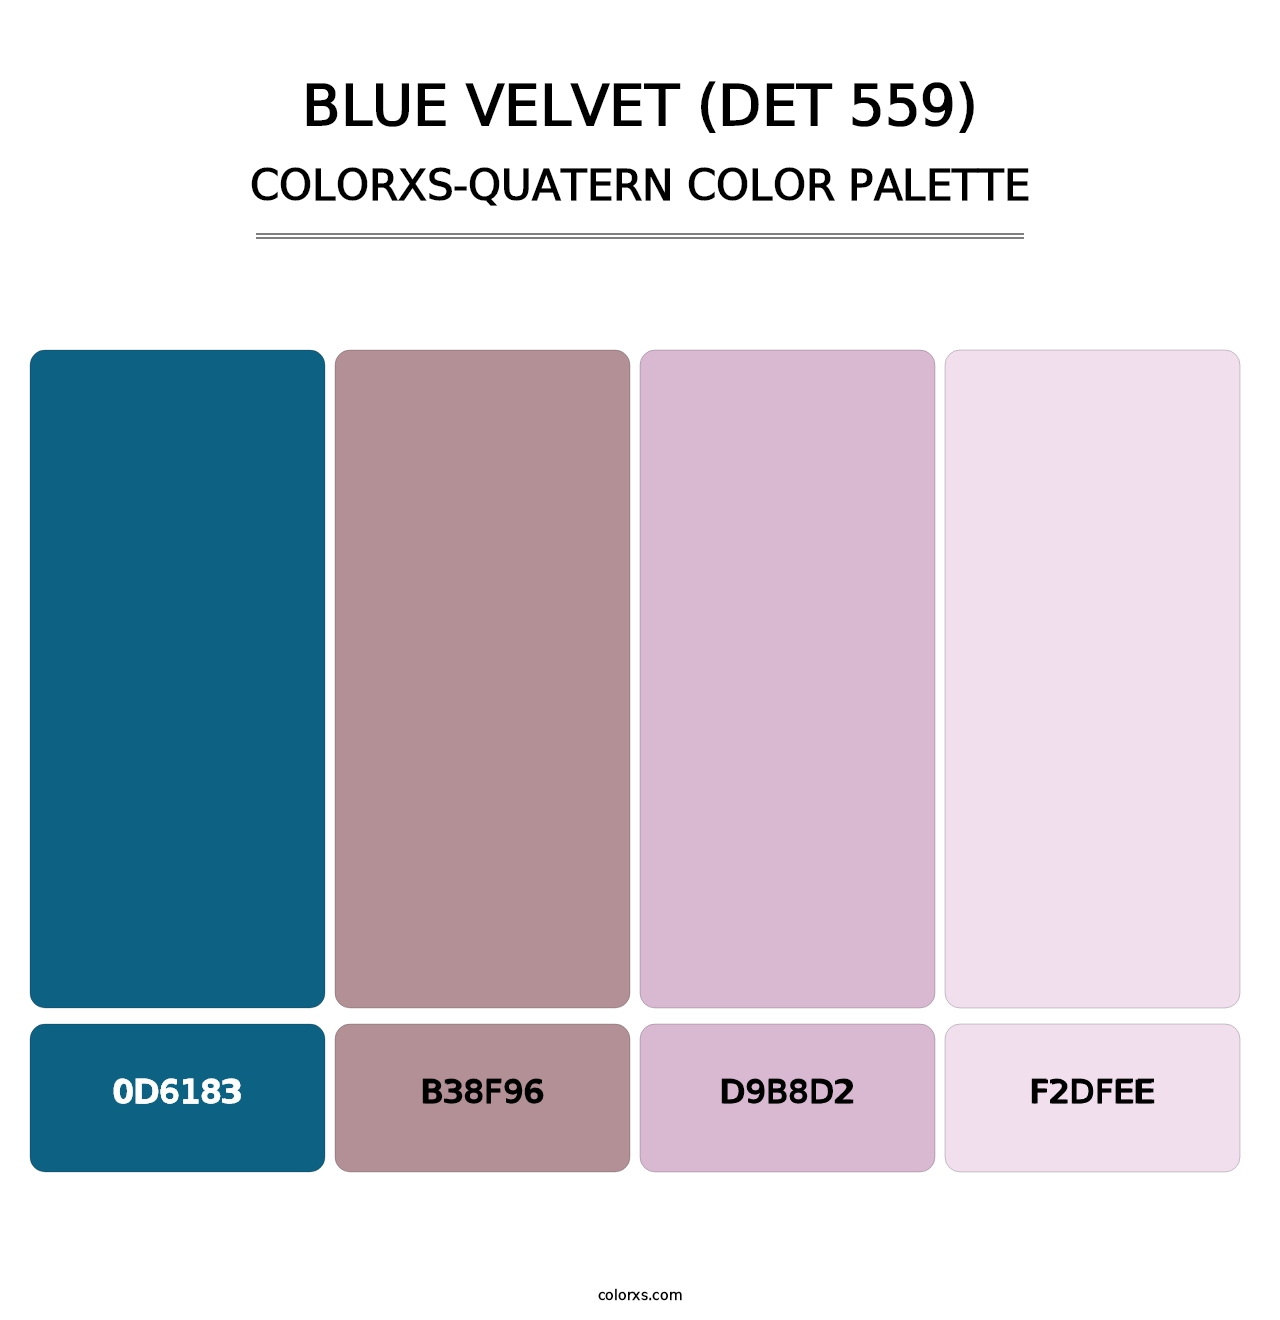 Blue Velvet (DET 559) - Colorxs Quatern Palette